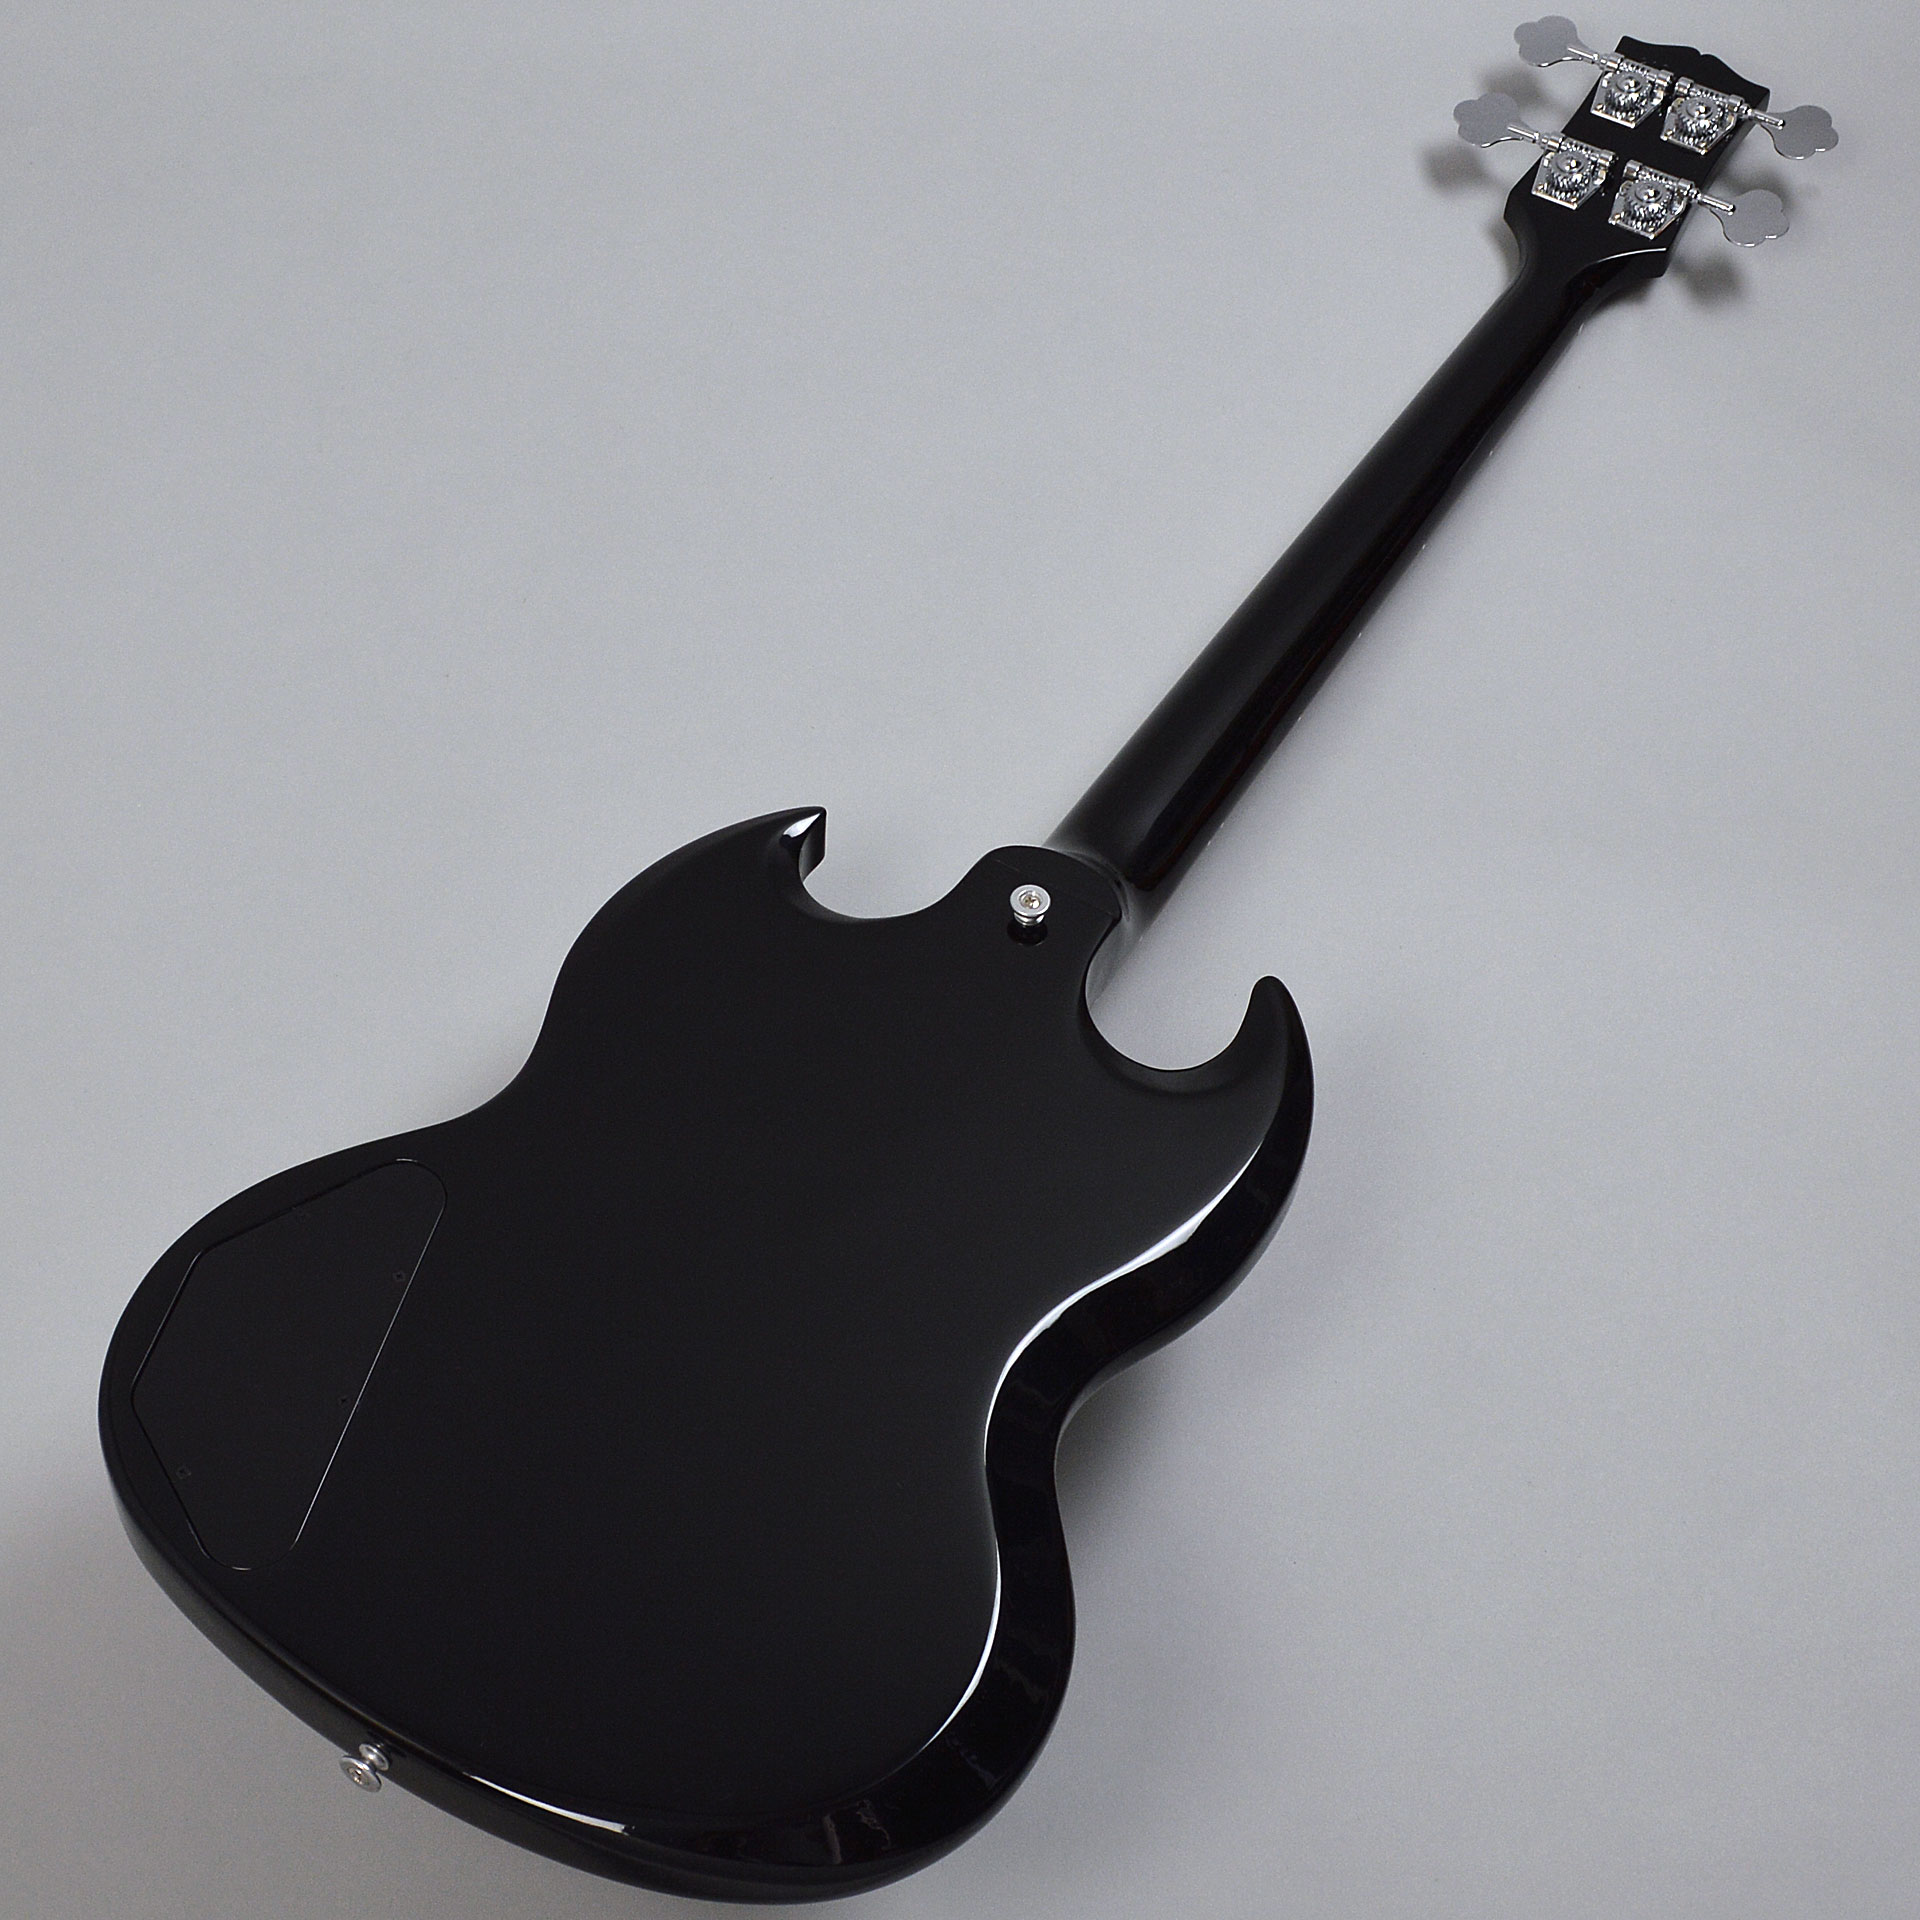 低価国産No.050222 Gibson SGベース エボニー EX- - - ギブソン